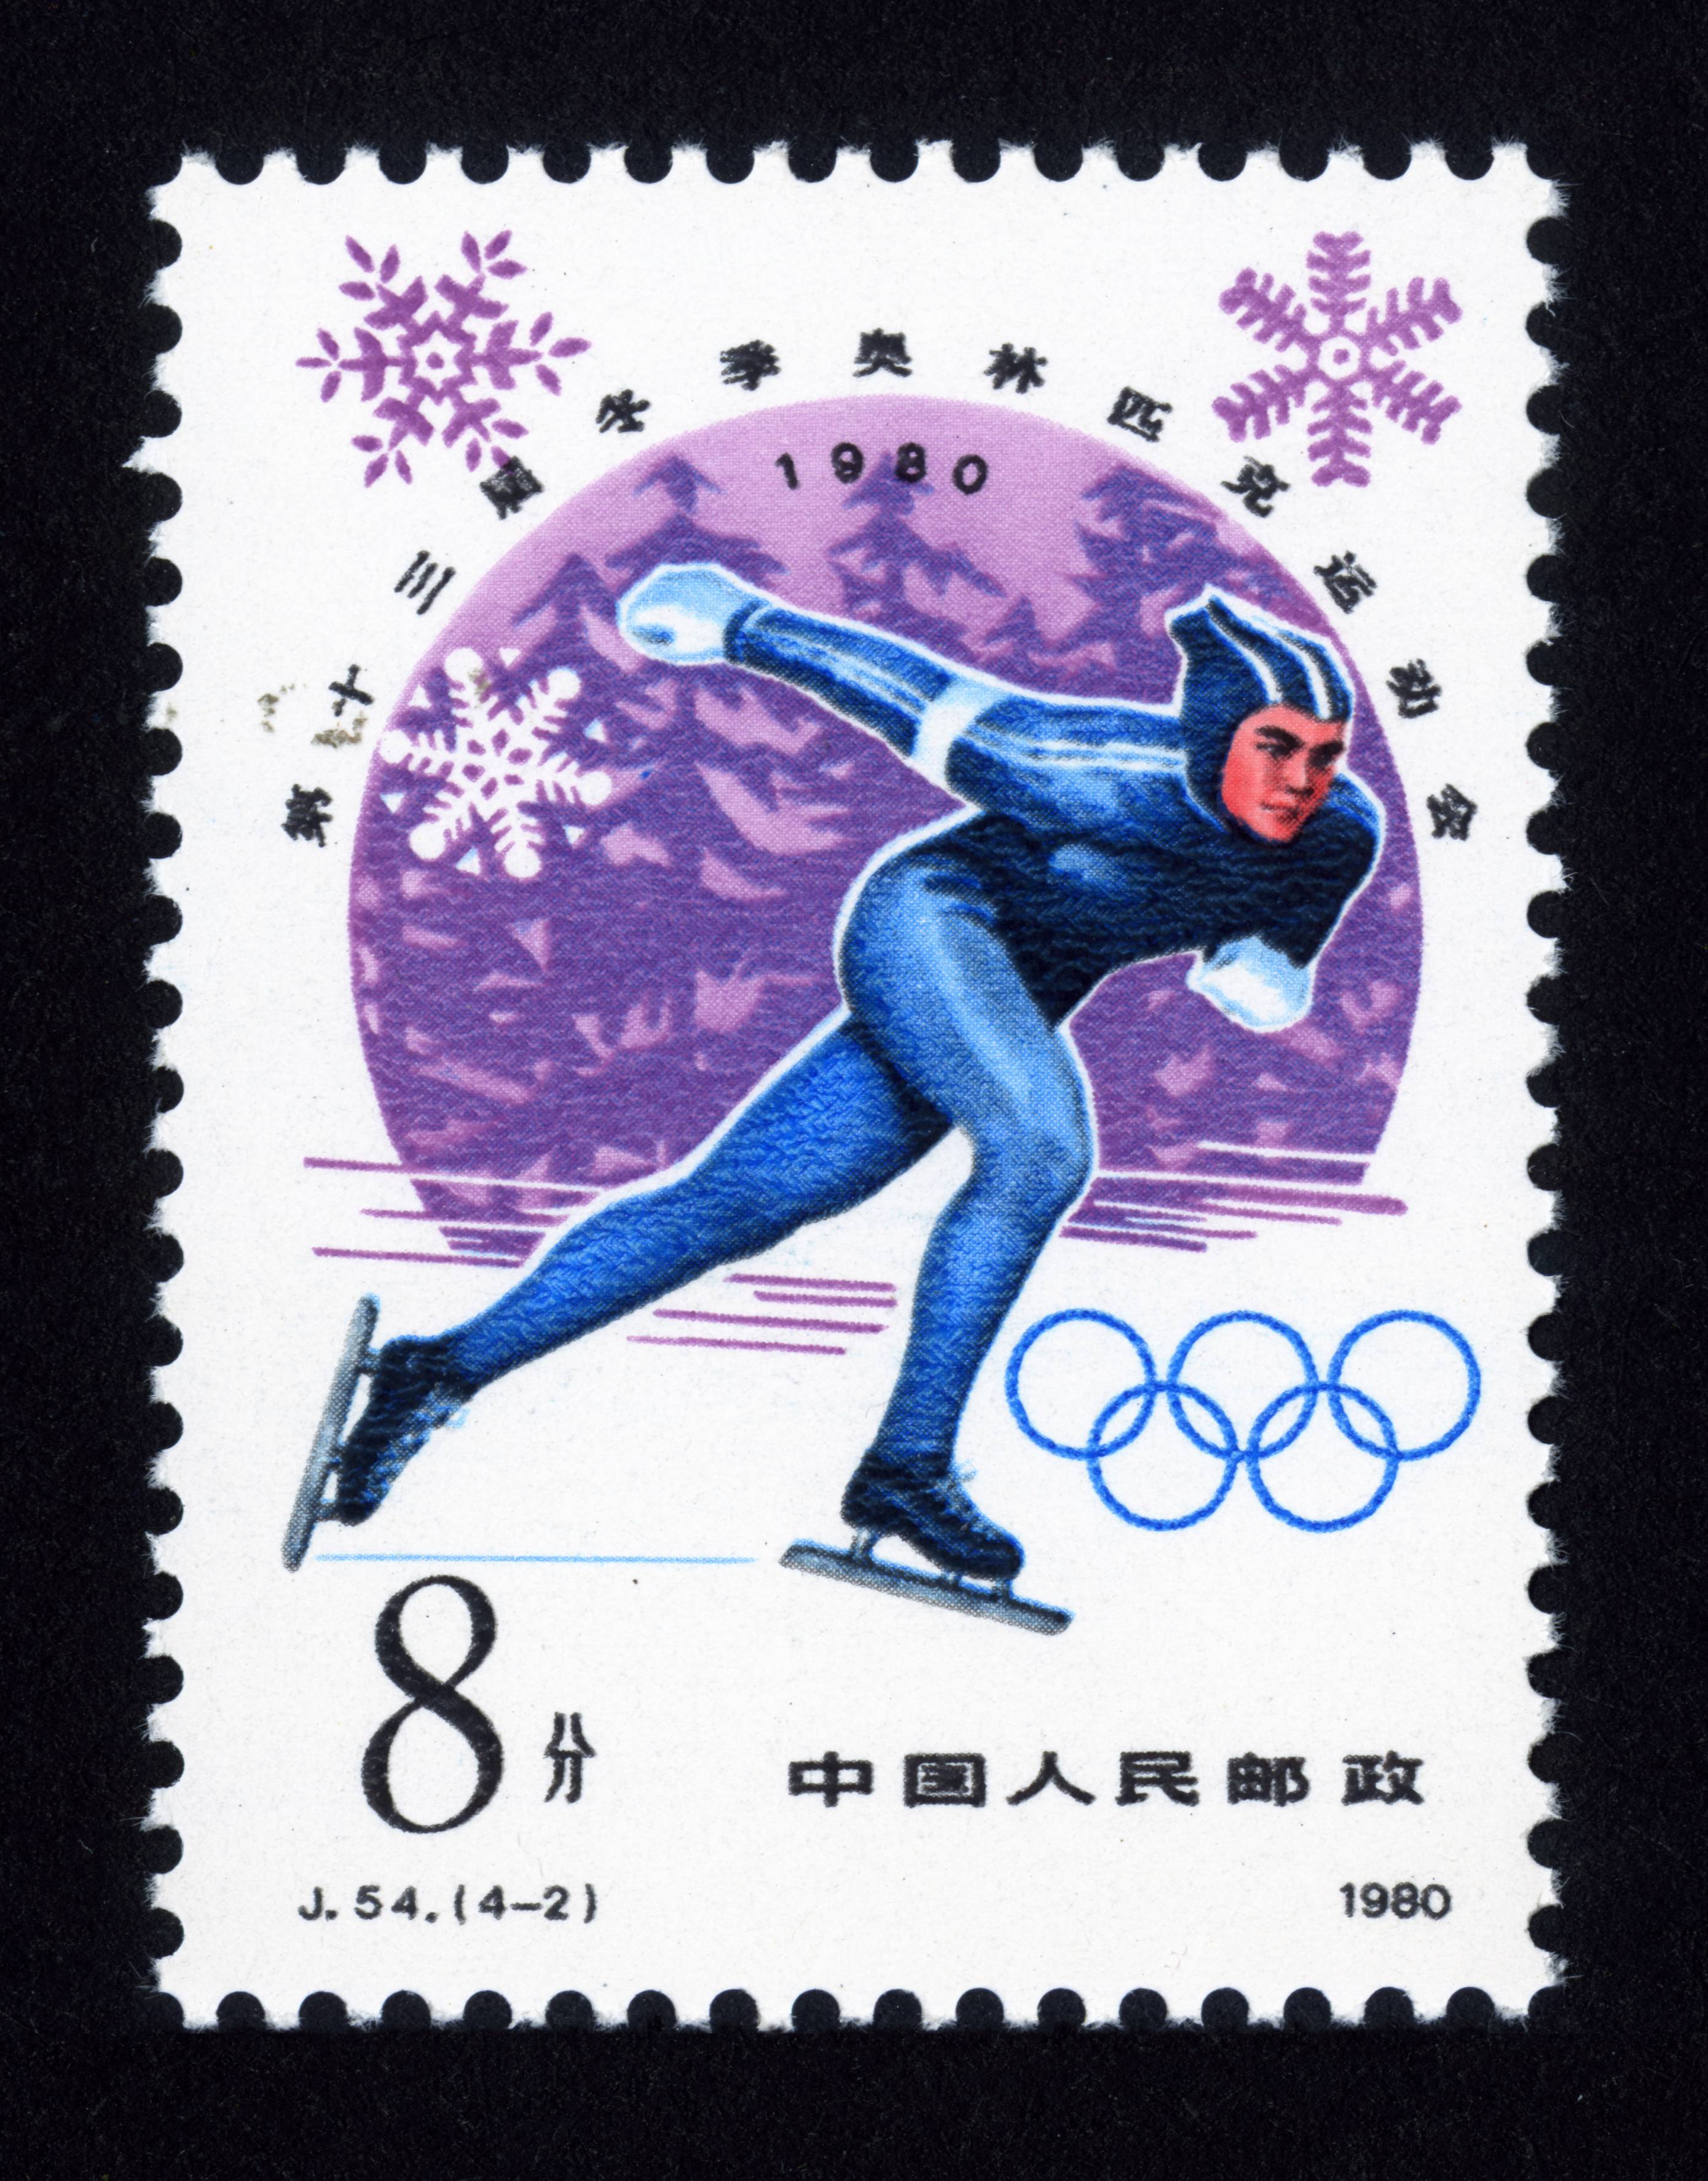 第十三届冬季奥林匹克运动会